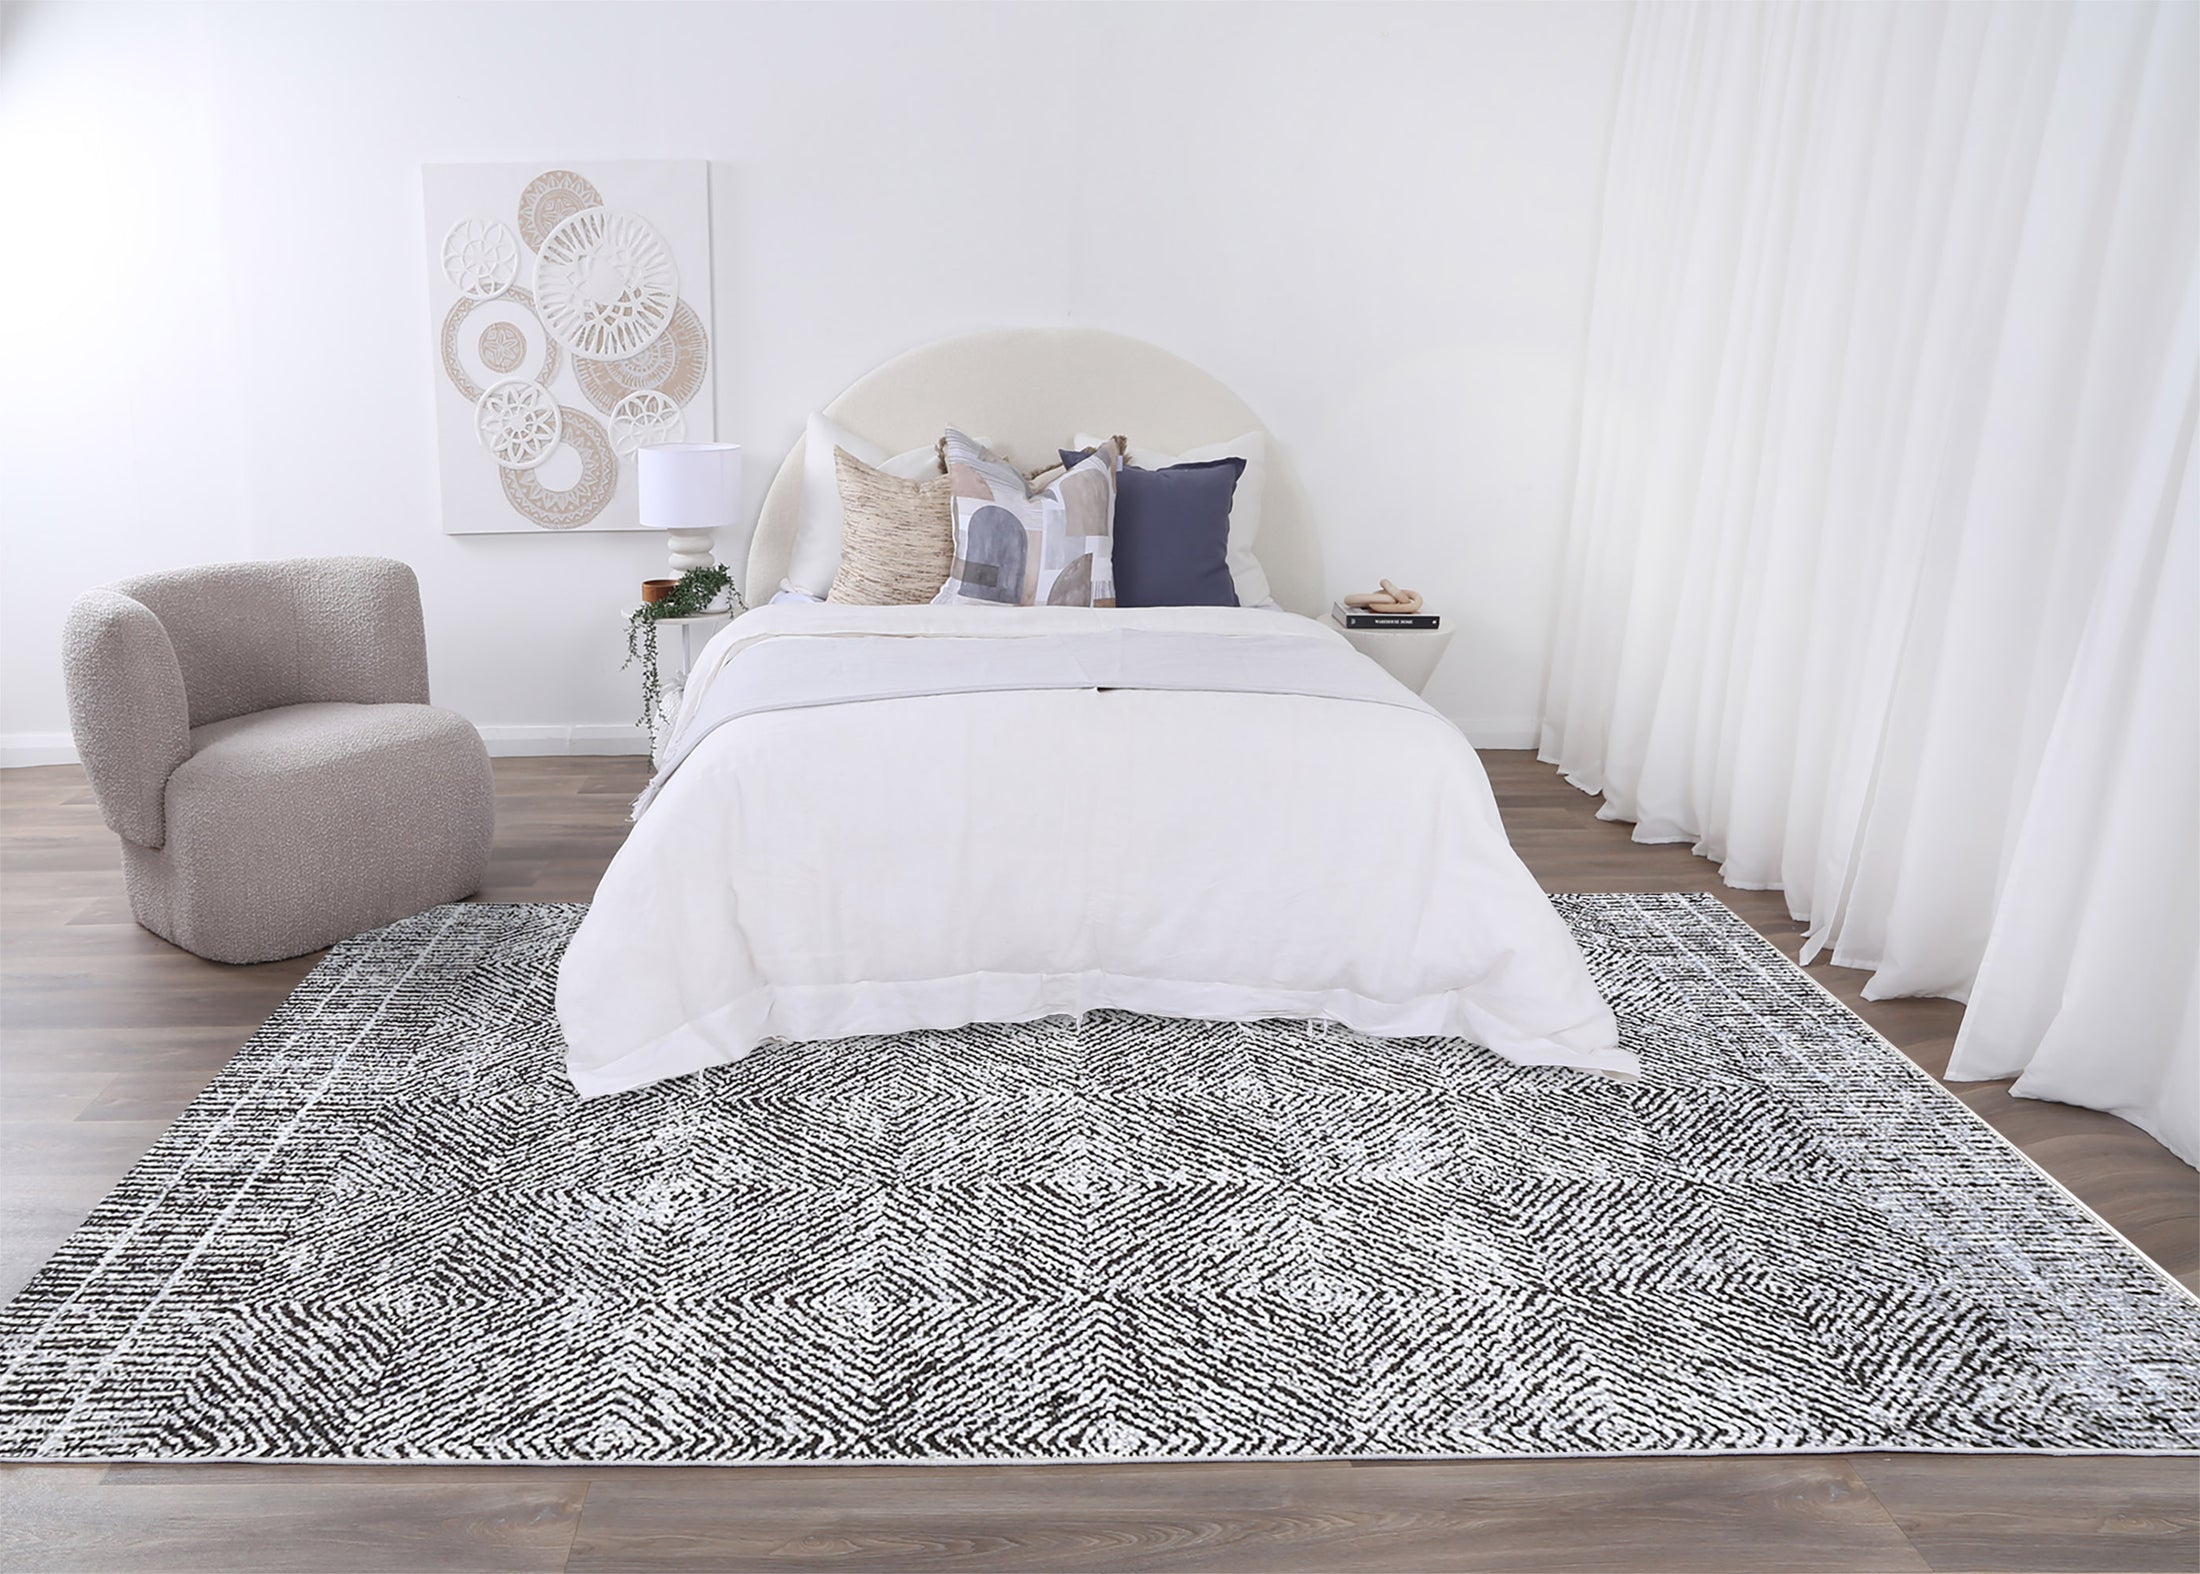 Contemporary Lauro Grey Rug in bedroom